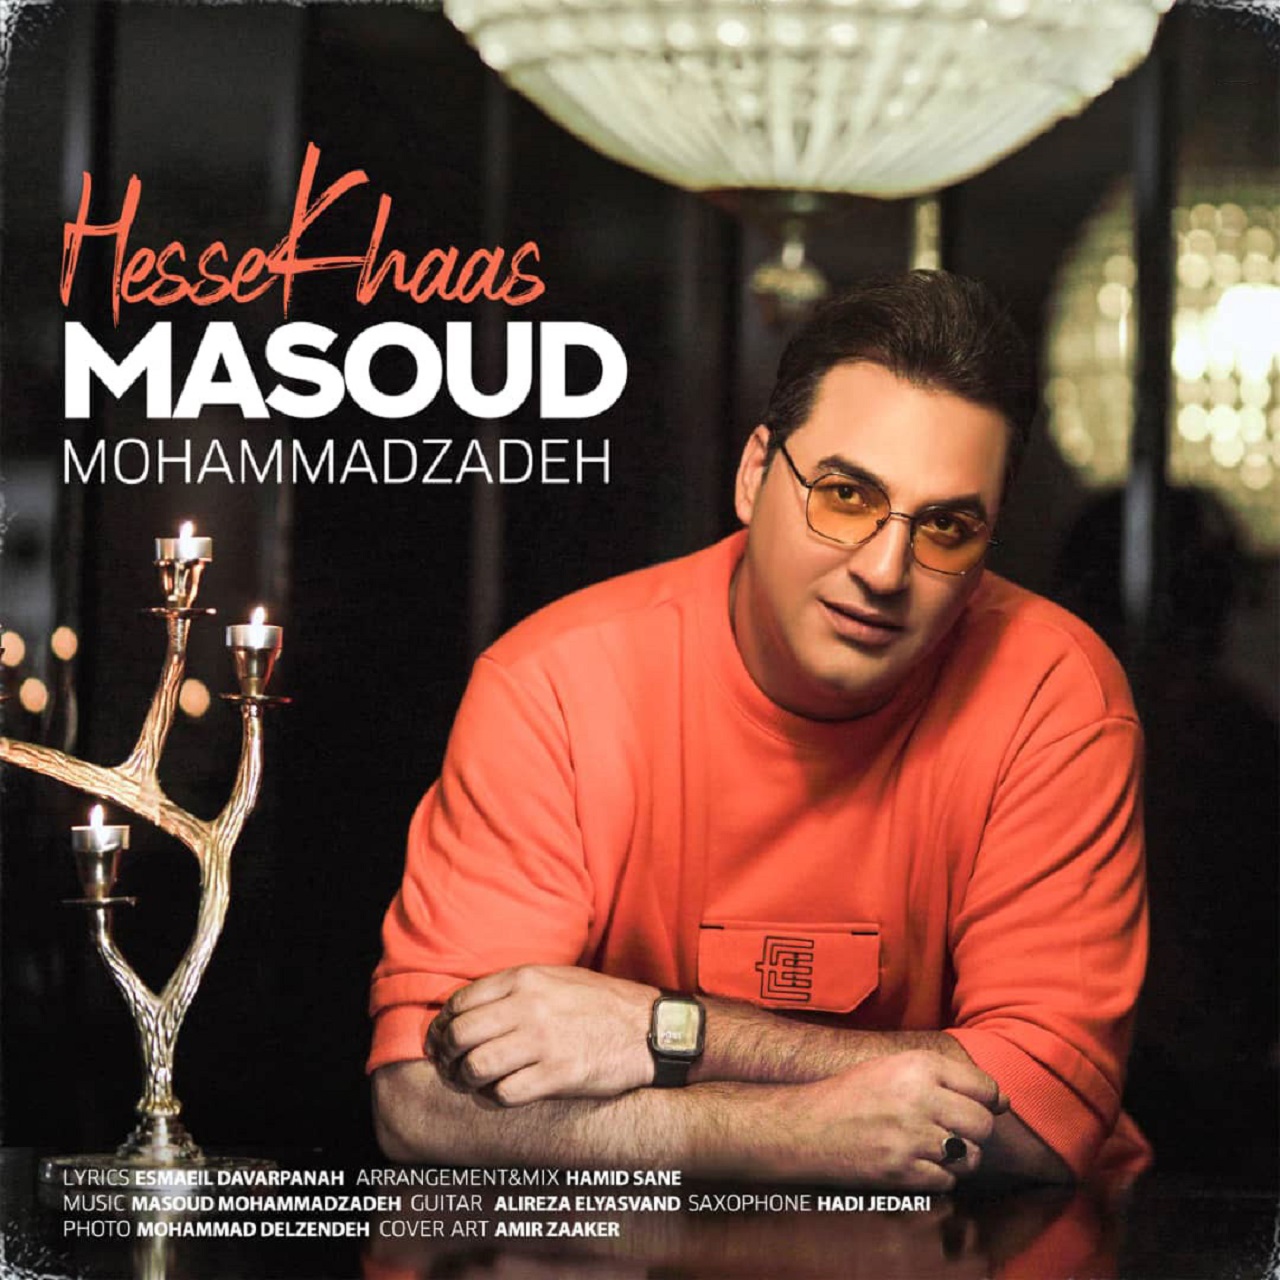  دانلود آهنگ جدید مسعود محمدزاده - حس خاص | Download New Music By Masoud Mohammadzadeh - Hesse Khaas